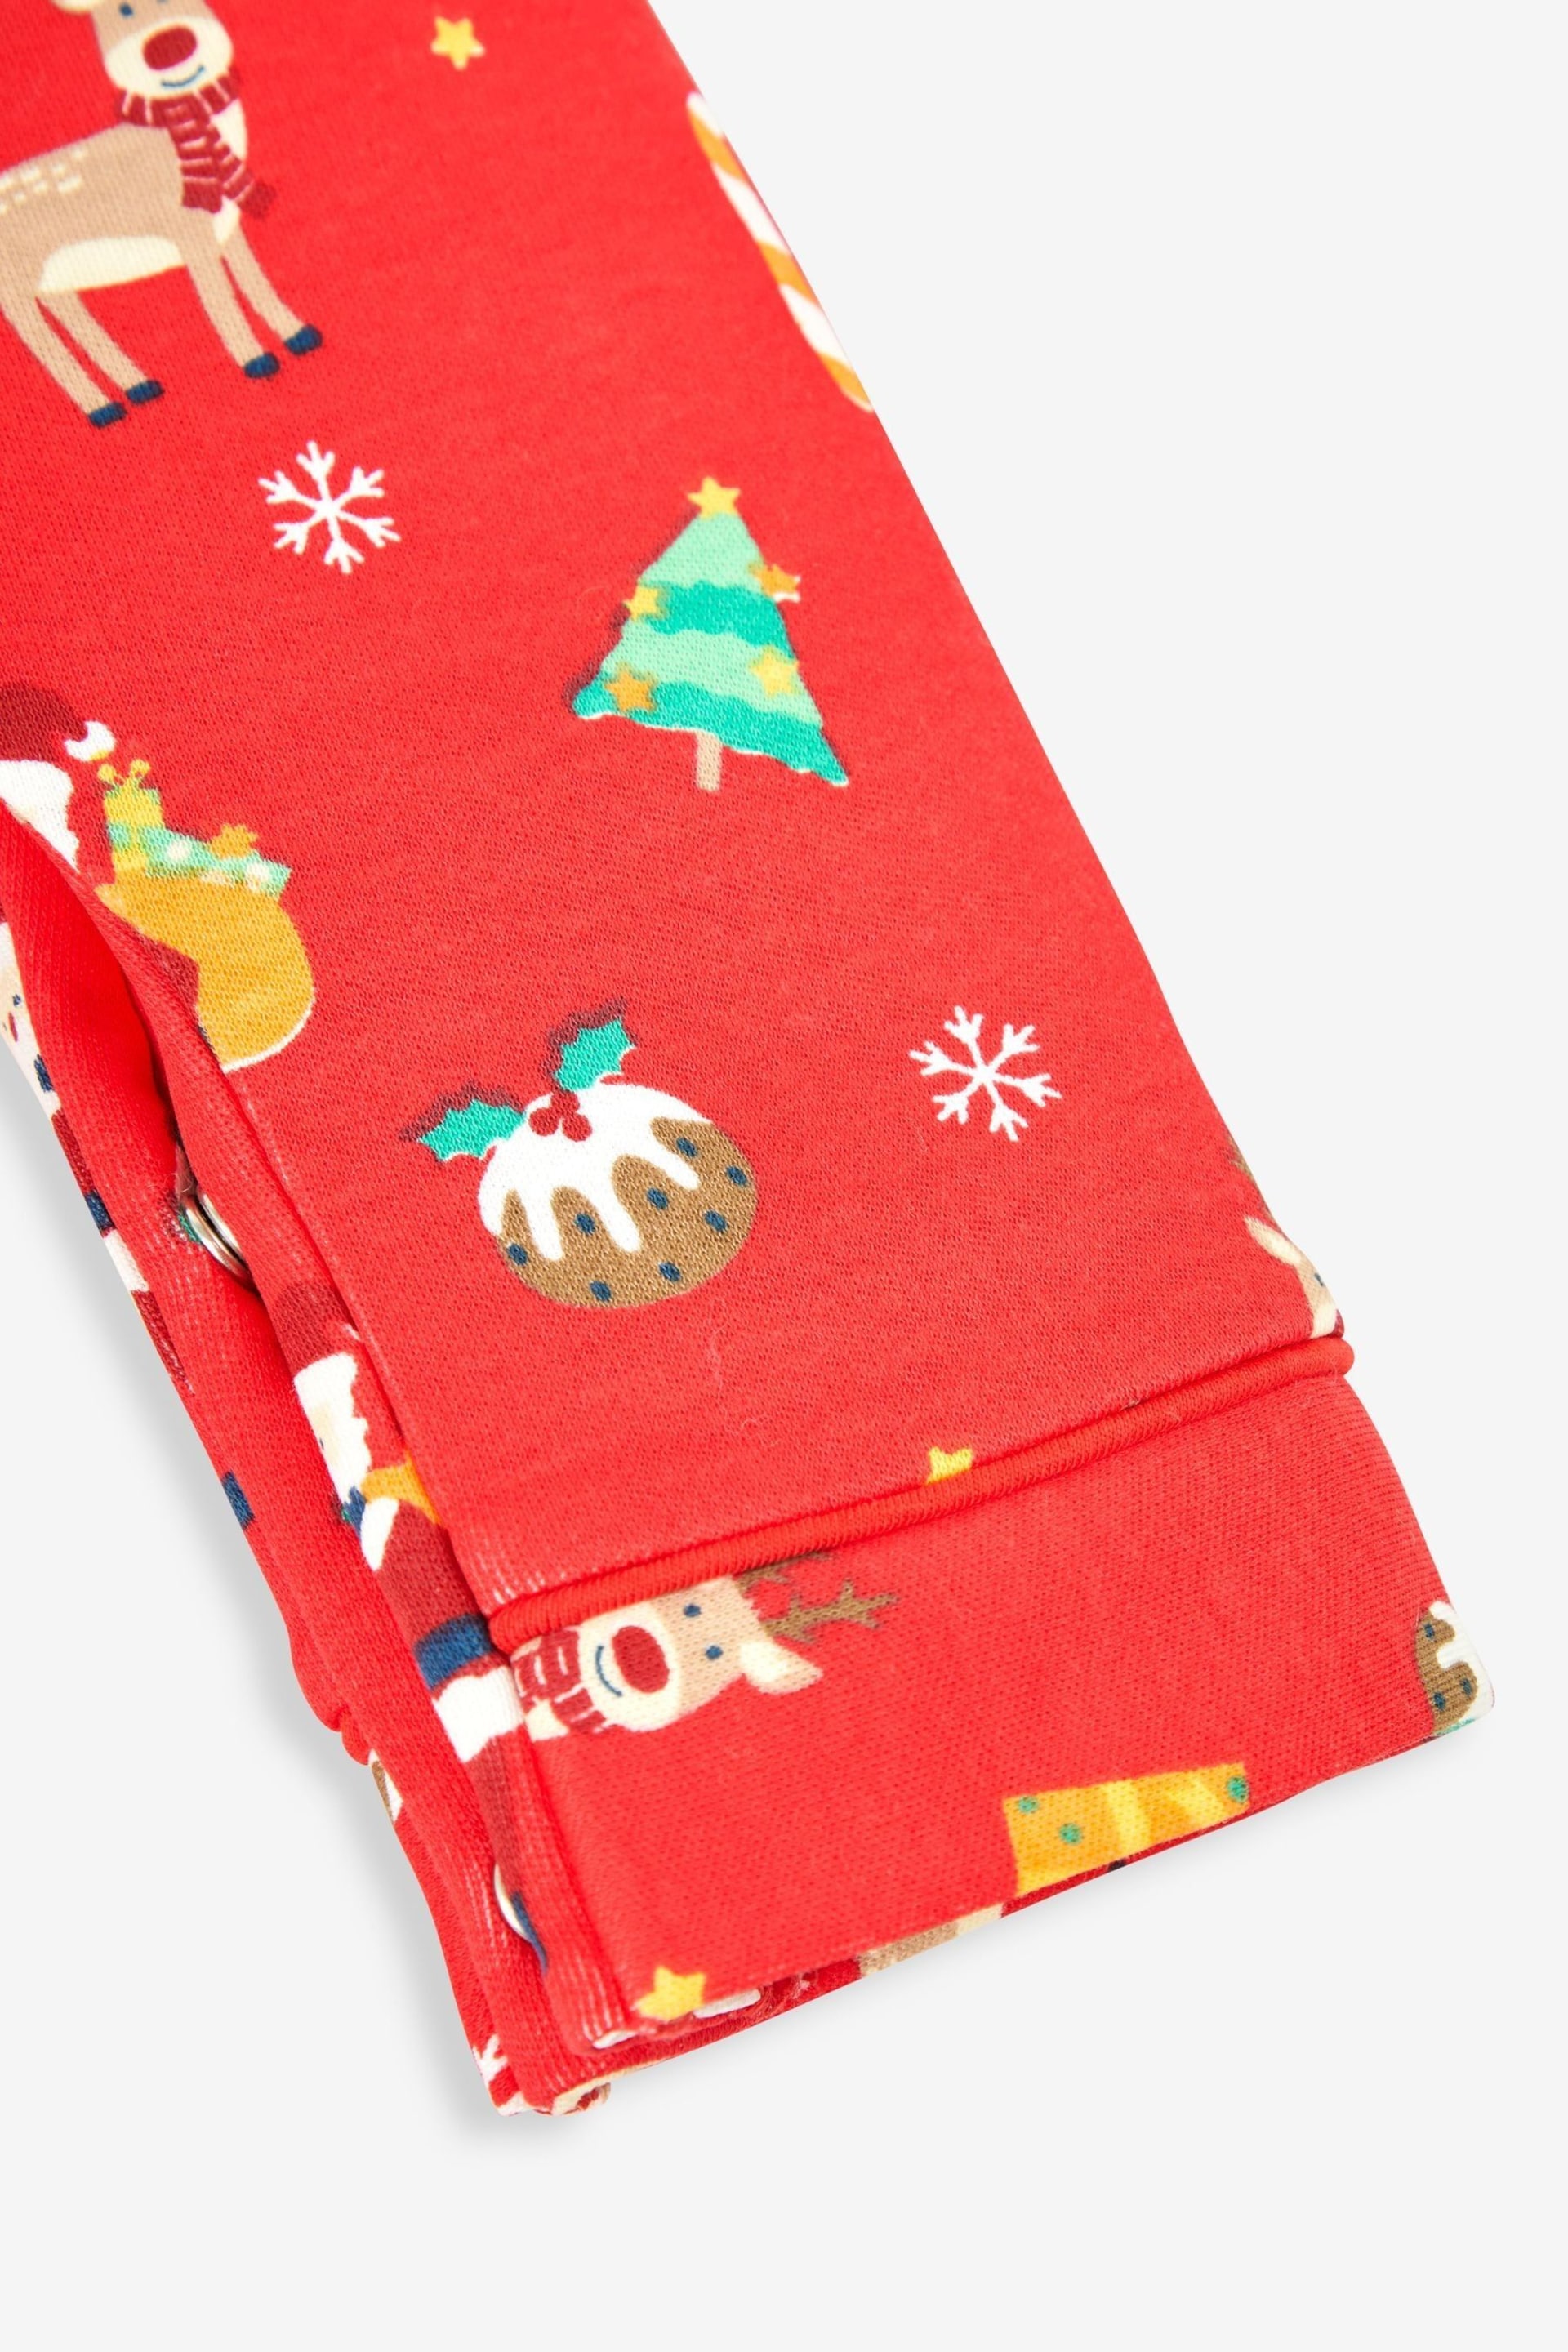 JoJo Maman Bébé Red Kids' Christmas All-In-One Pyjamas - Image 3 of 3